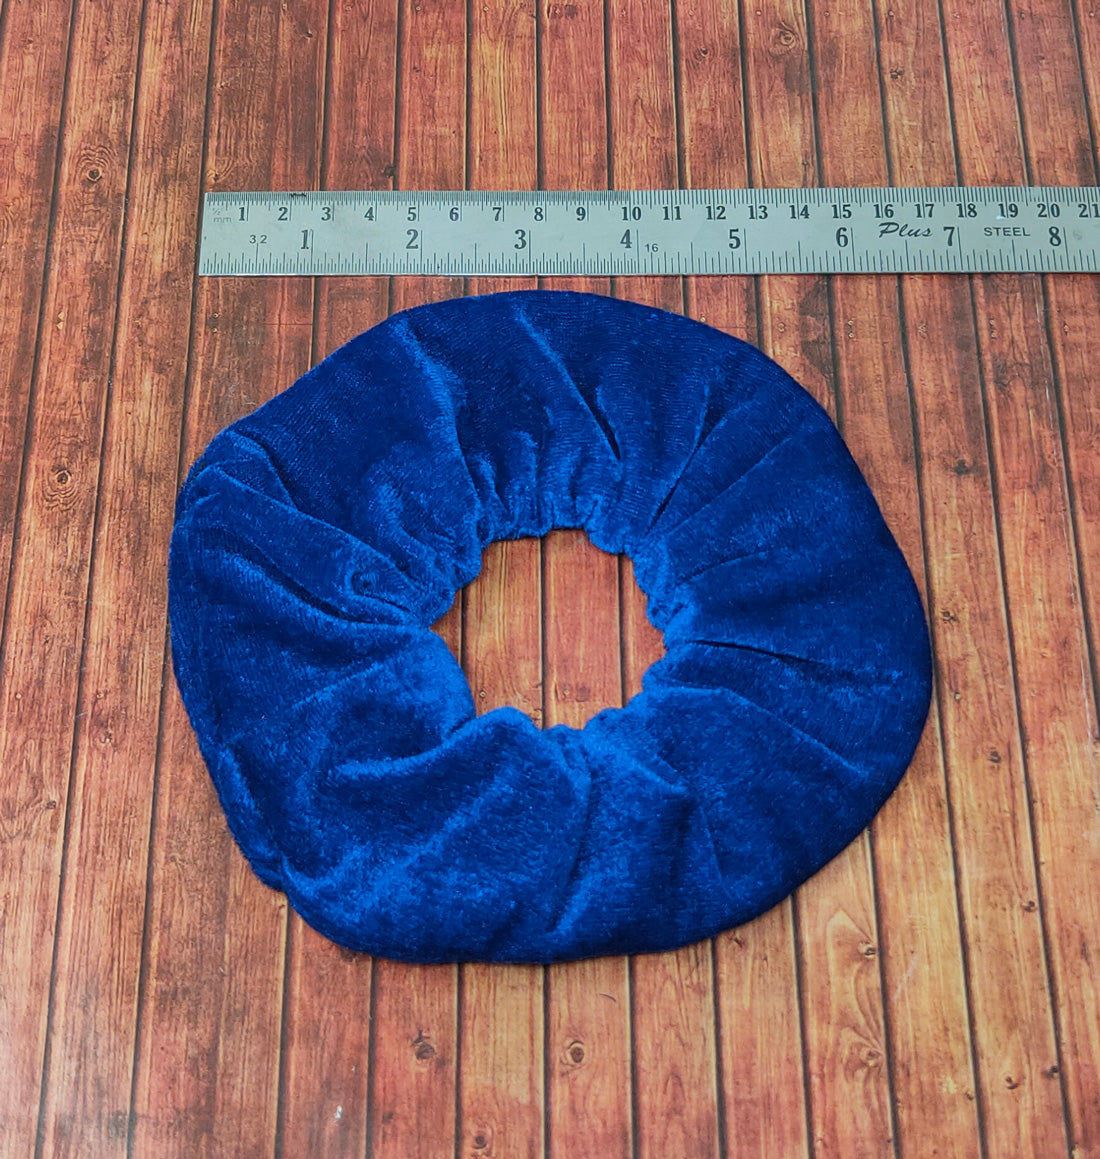 Anokhi Ada Violet Velvet Extra Large Scrunchie for Girls and Women (15-11 Scrunchie)